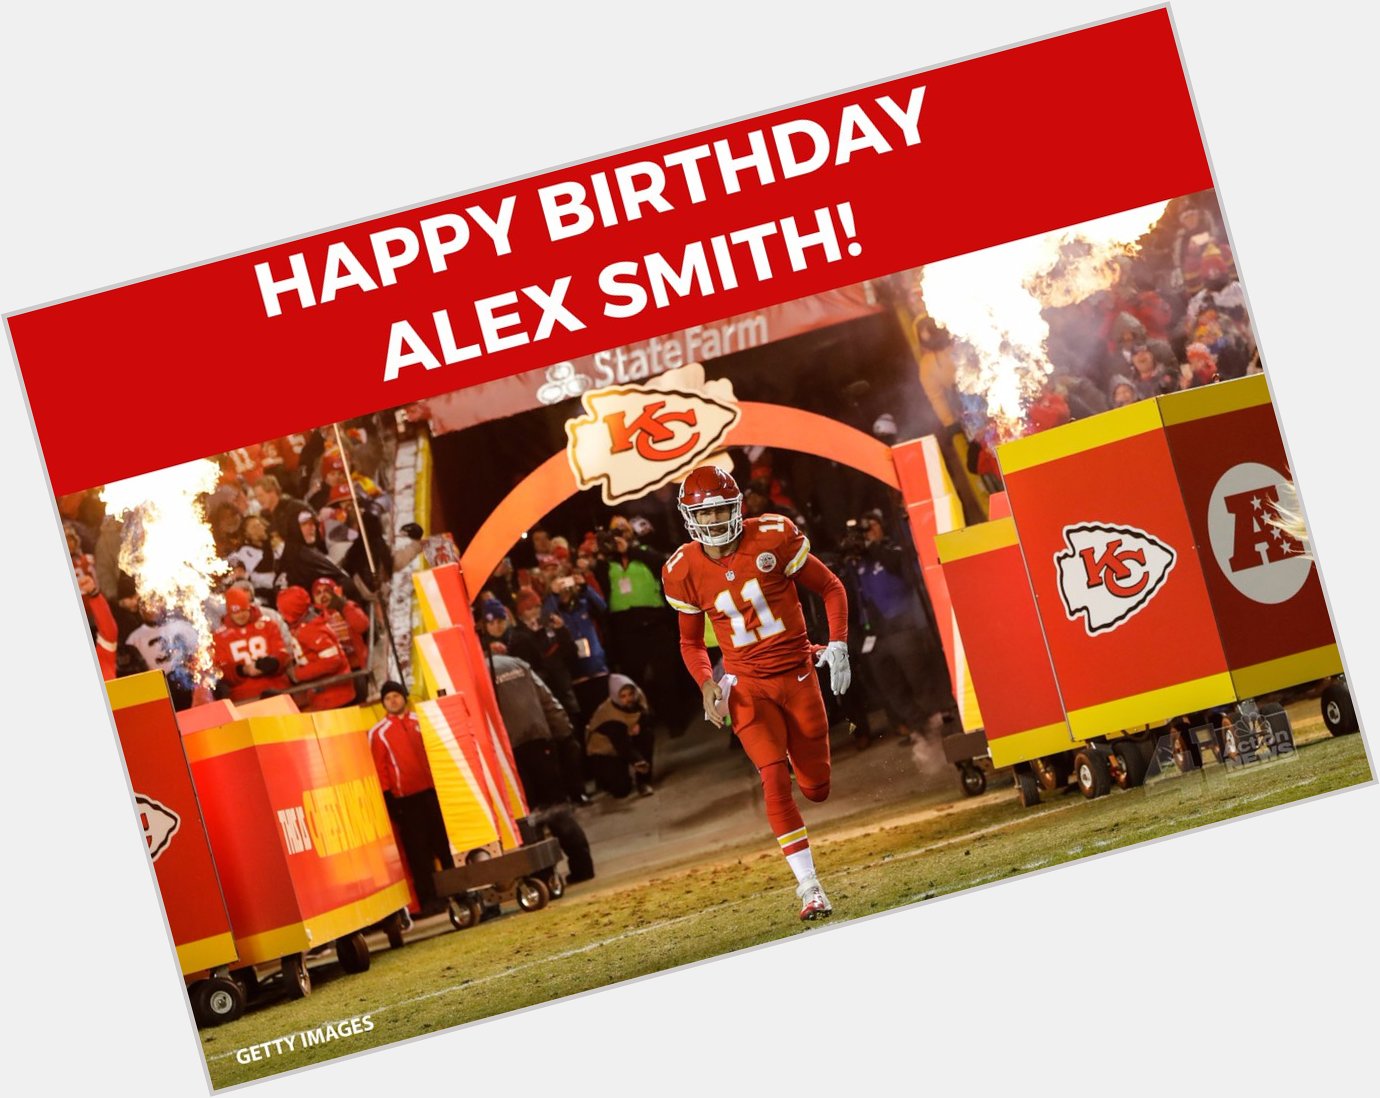 HAPPY BIRTHDAY to player Alex Smith! 